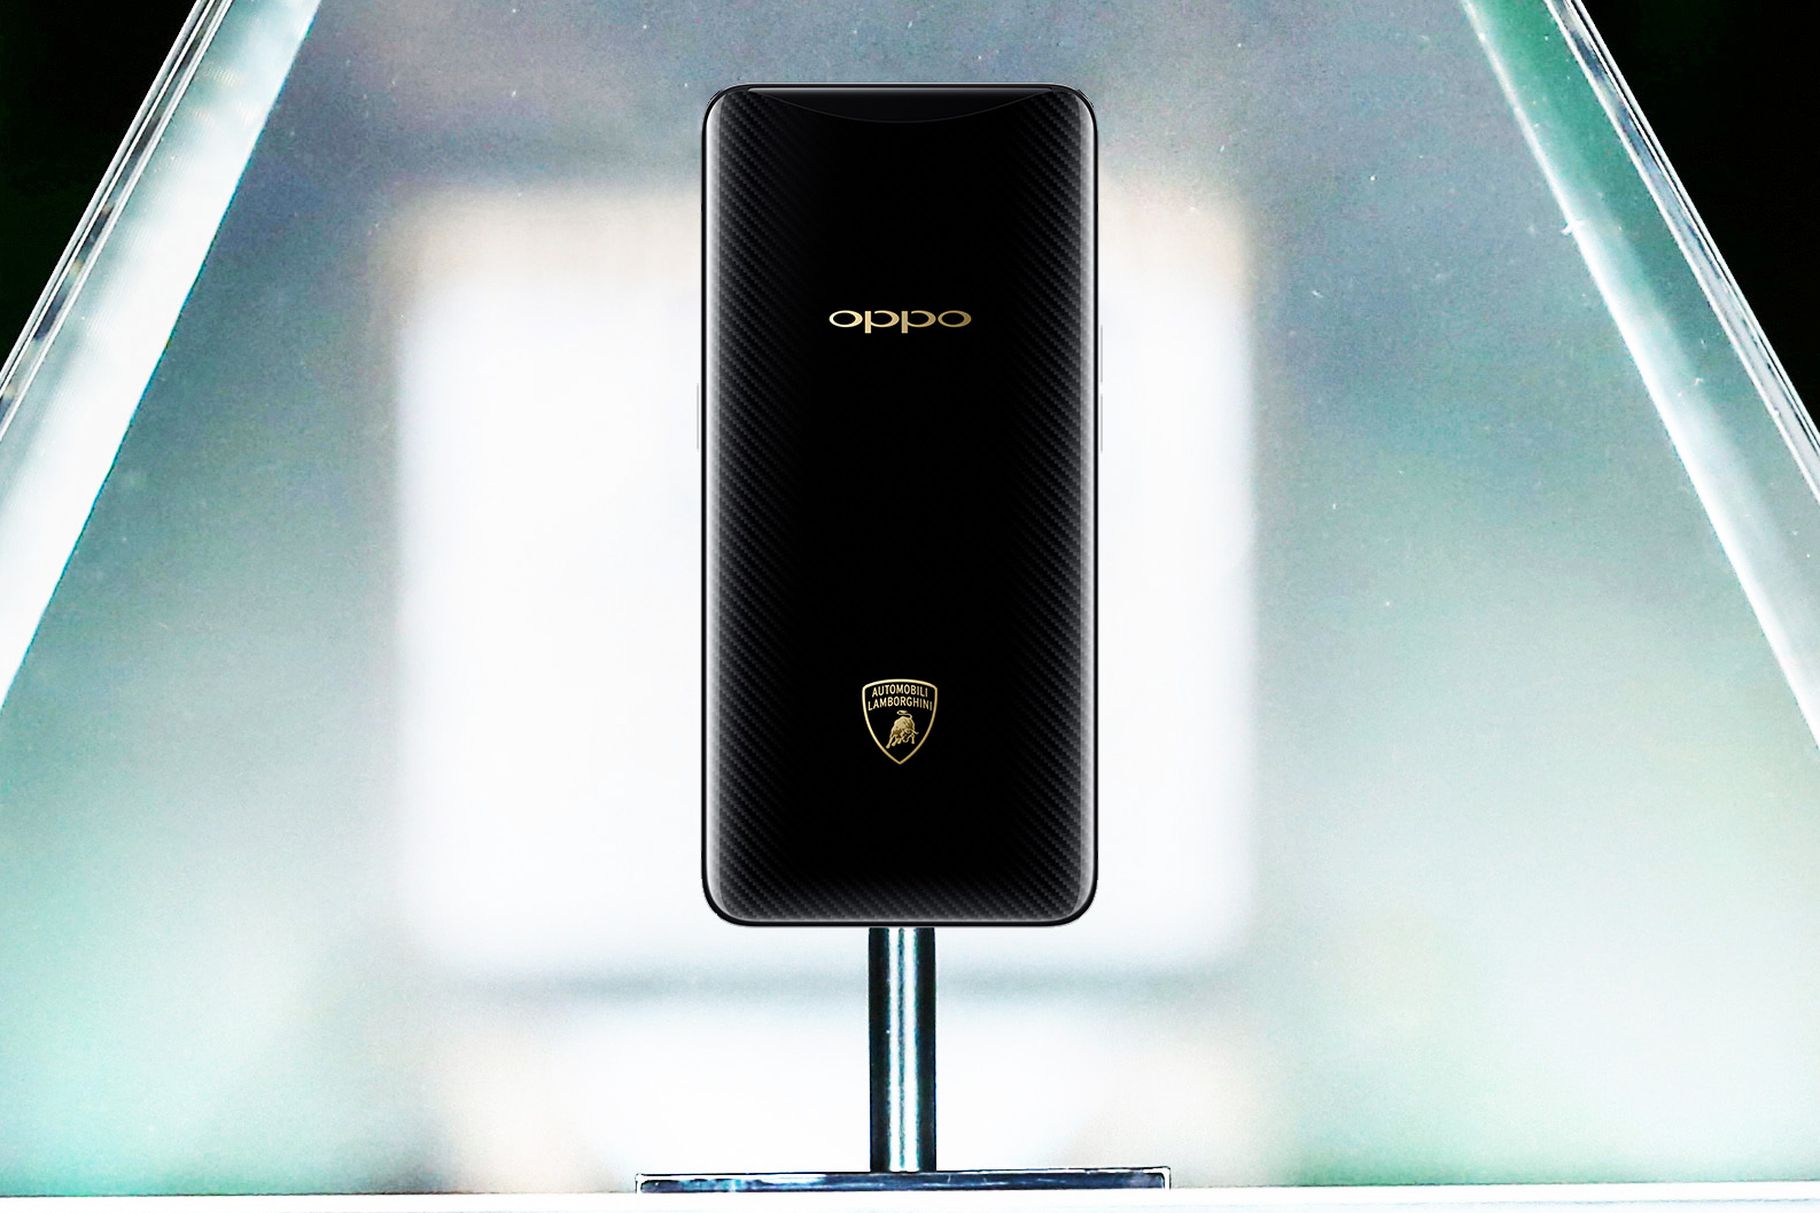 Oppo Find X Lamborghini Edition features Super VOOC